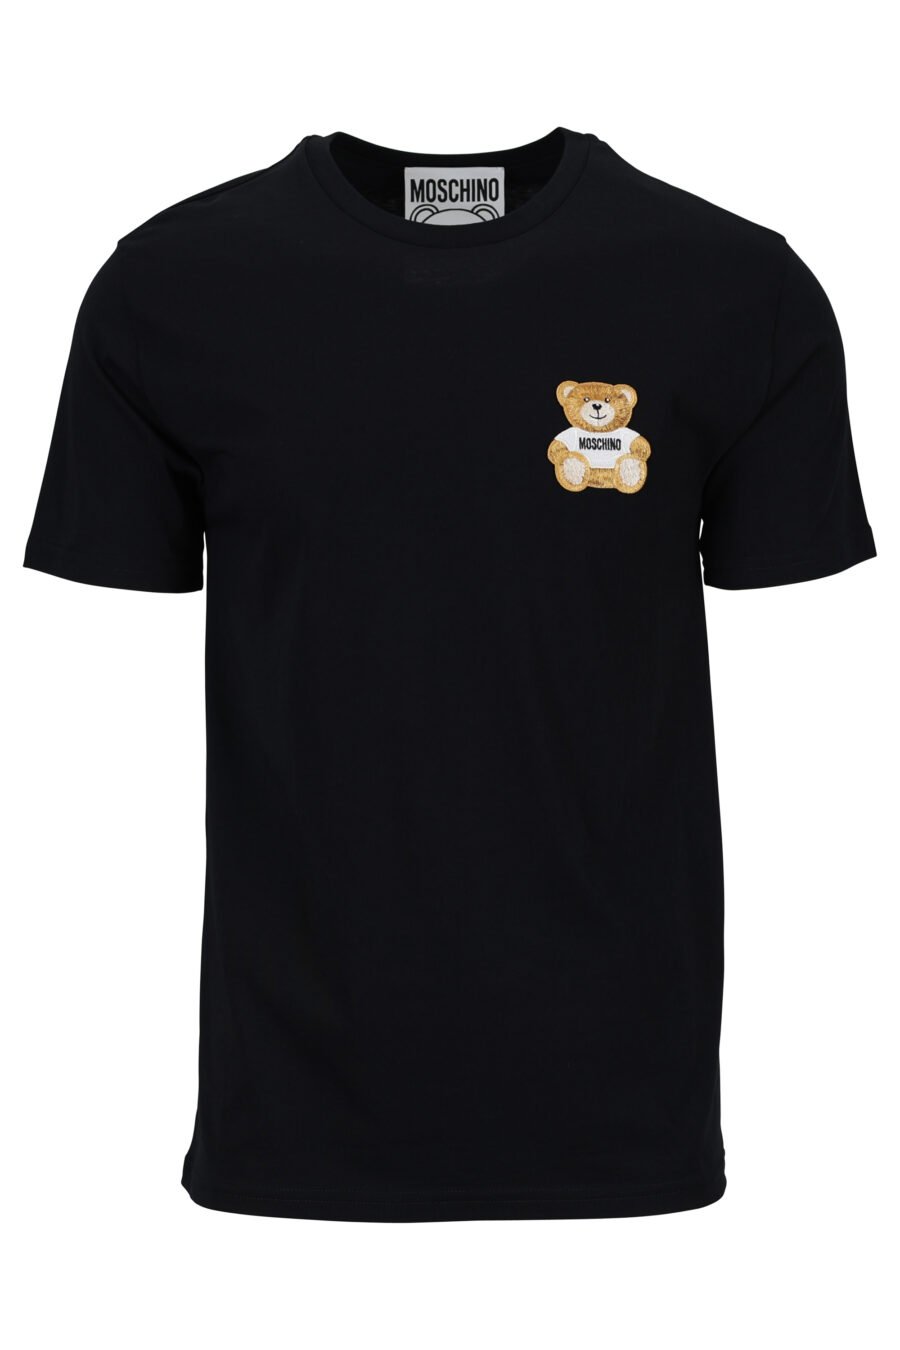 T-shirt écologique noir avec logo bear mini - 889316853063